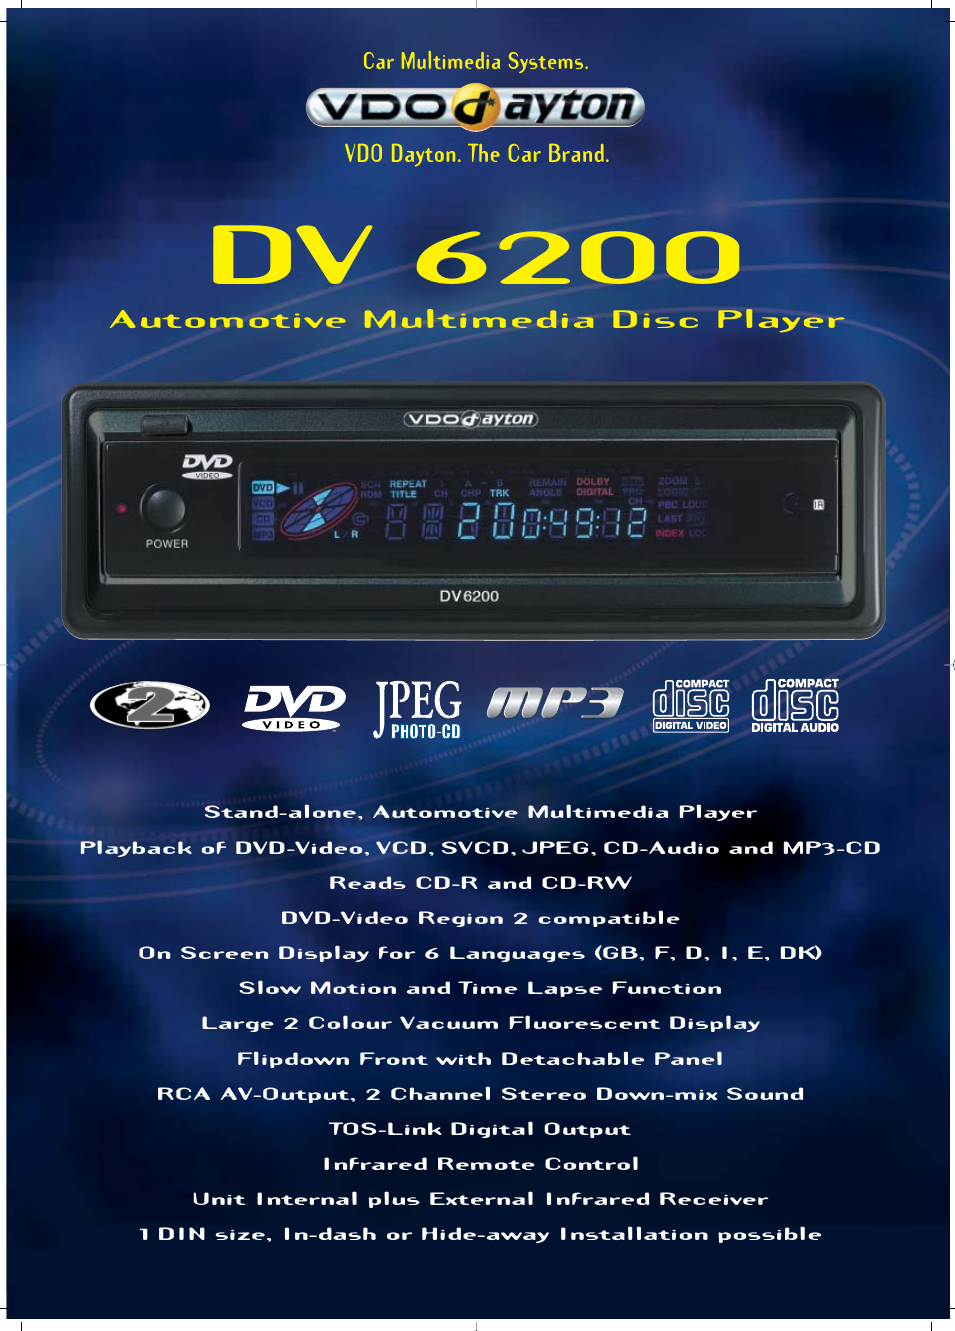 DV 6200